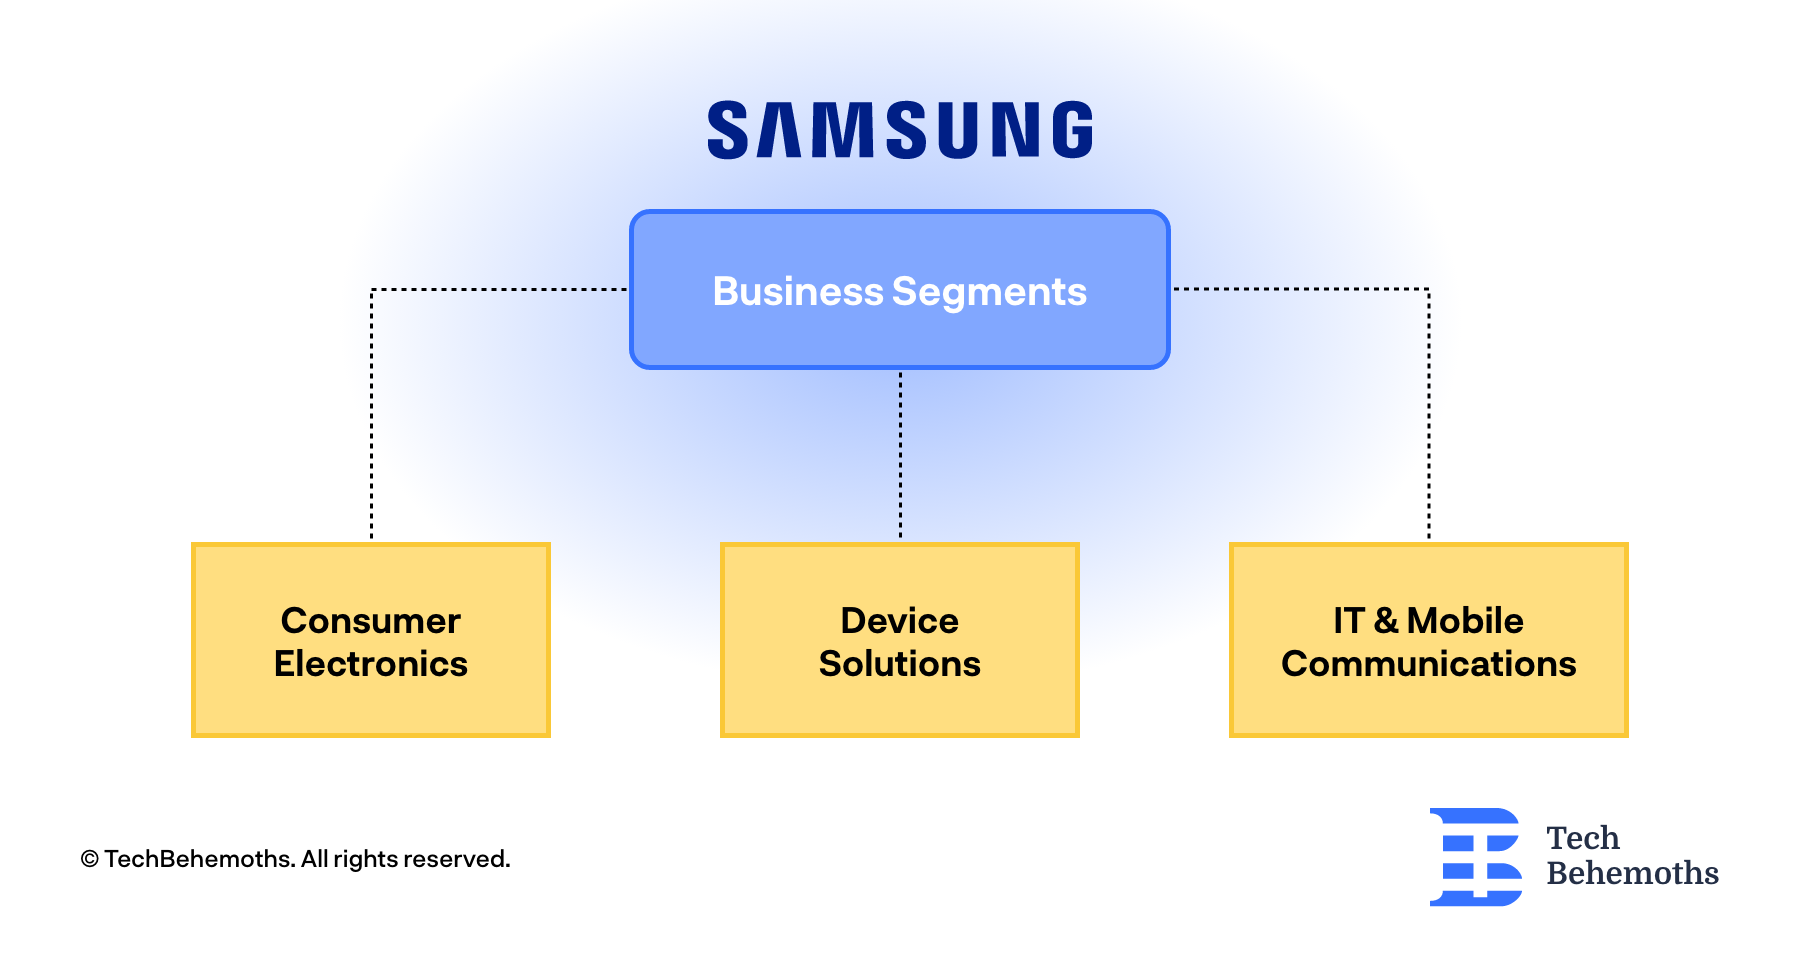 Samsung Business Segments Analyzed 